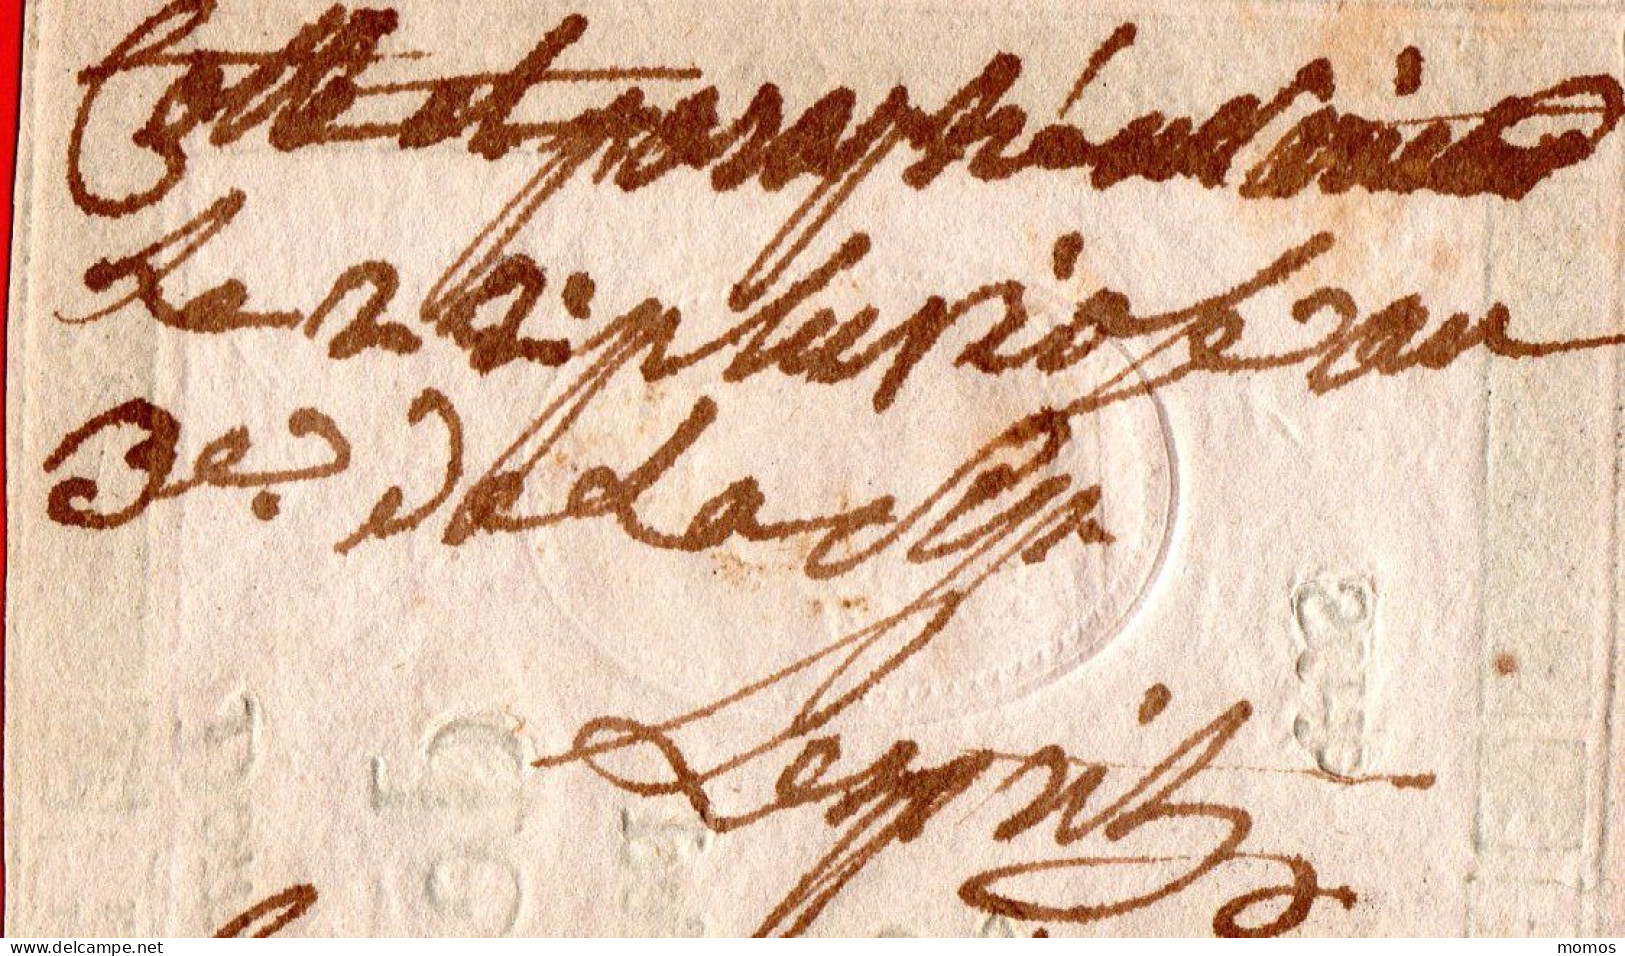 ASSIGNAT FAUX 10 LIVRES - 24 OCTOBRE 1792 - CERTIFIE FAUX + ANNOTATIONS MANUSCRITES D'EPOQUE REVOLUTIONNAIRE - Assignats